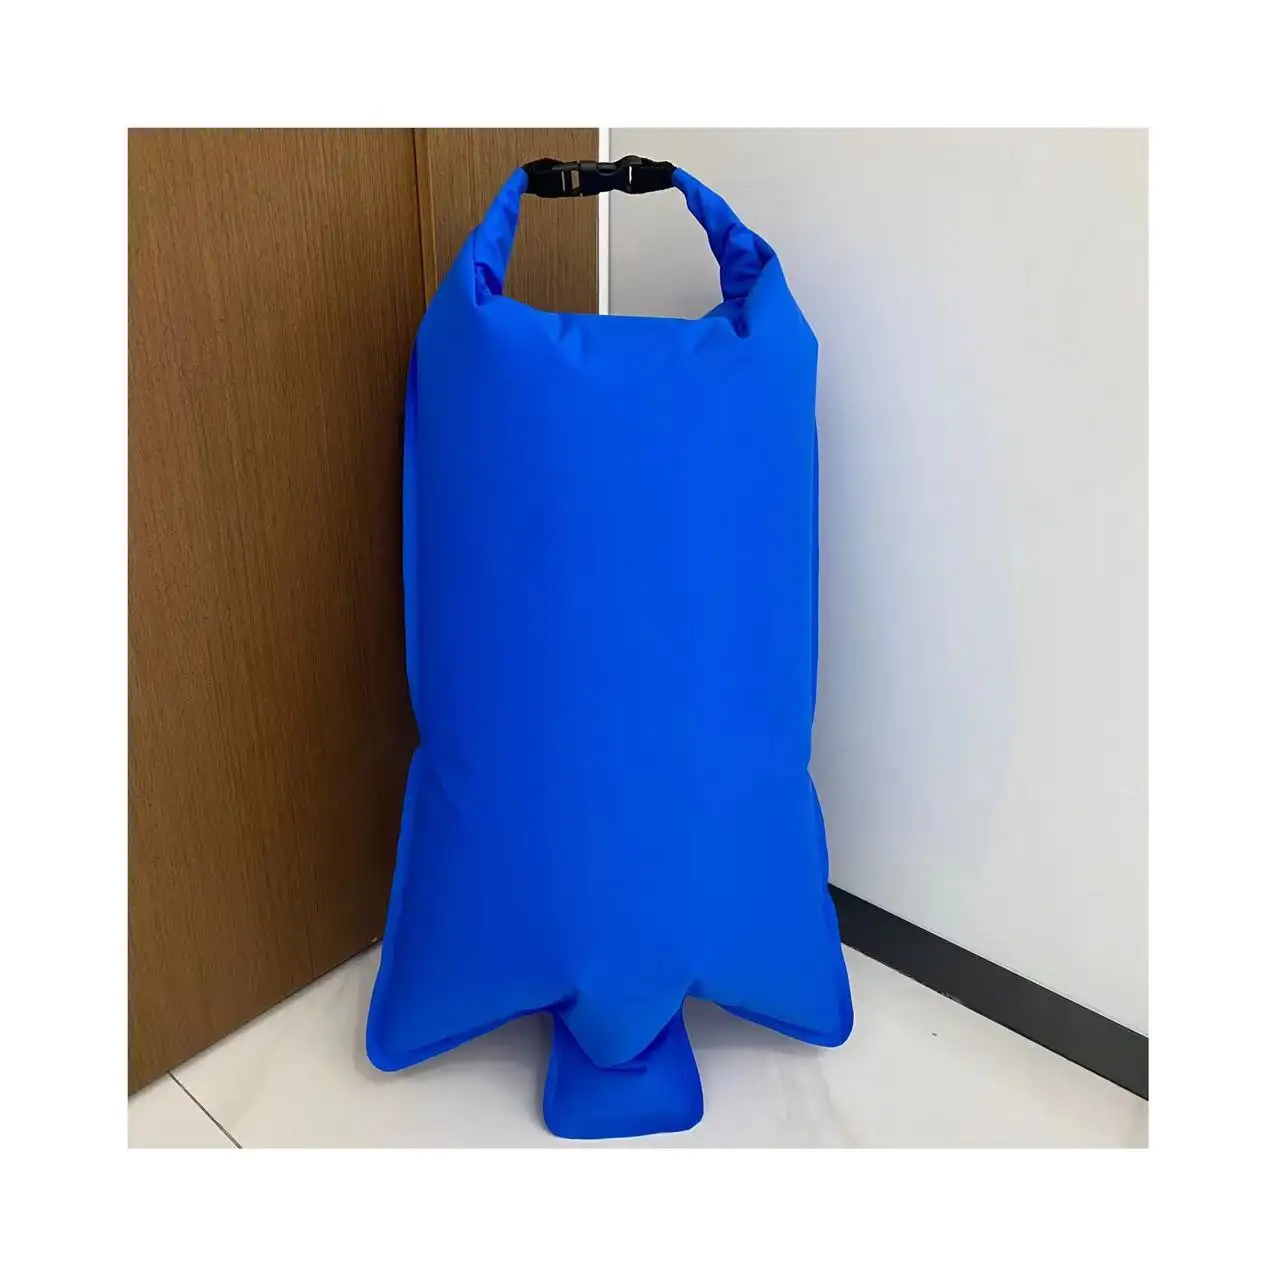 Borsa a sacco con pompa topazio ultraleggera impermeabile Roll Top borsa leggera per gonfiare